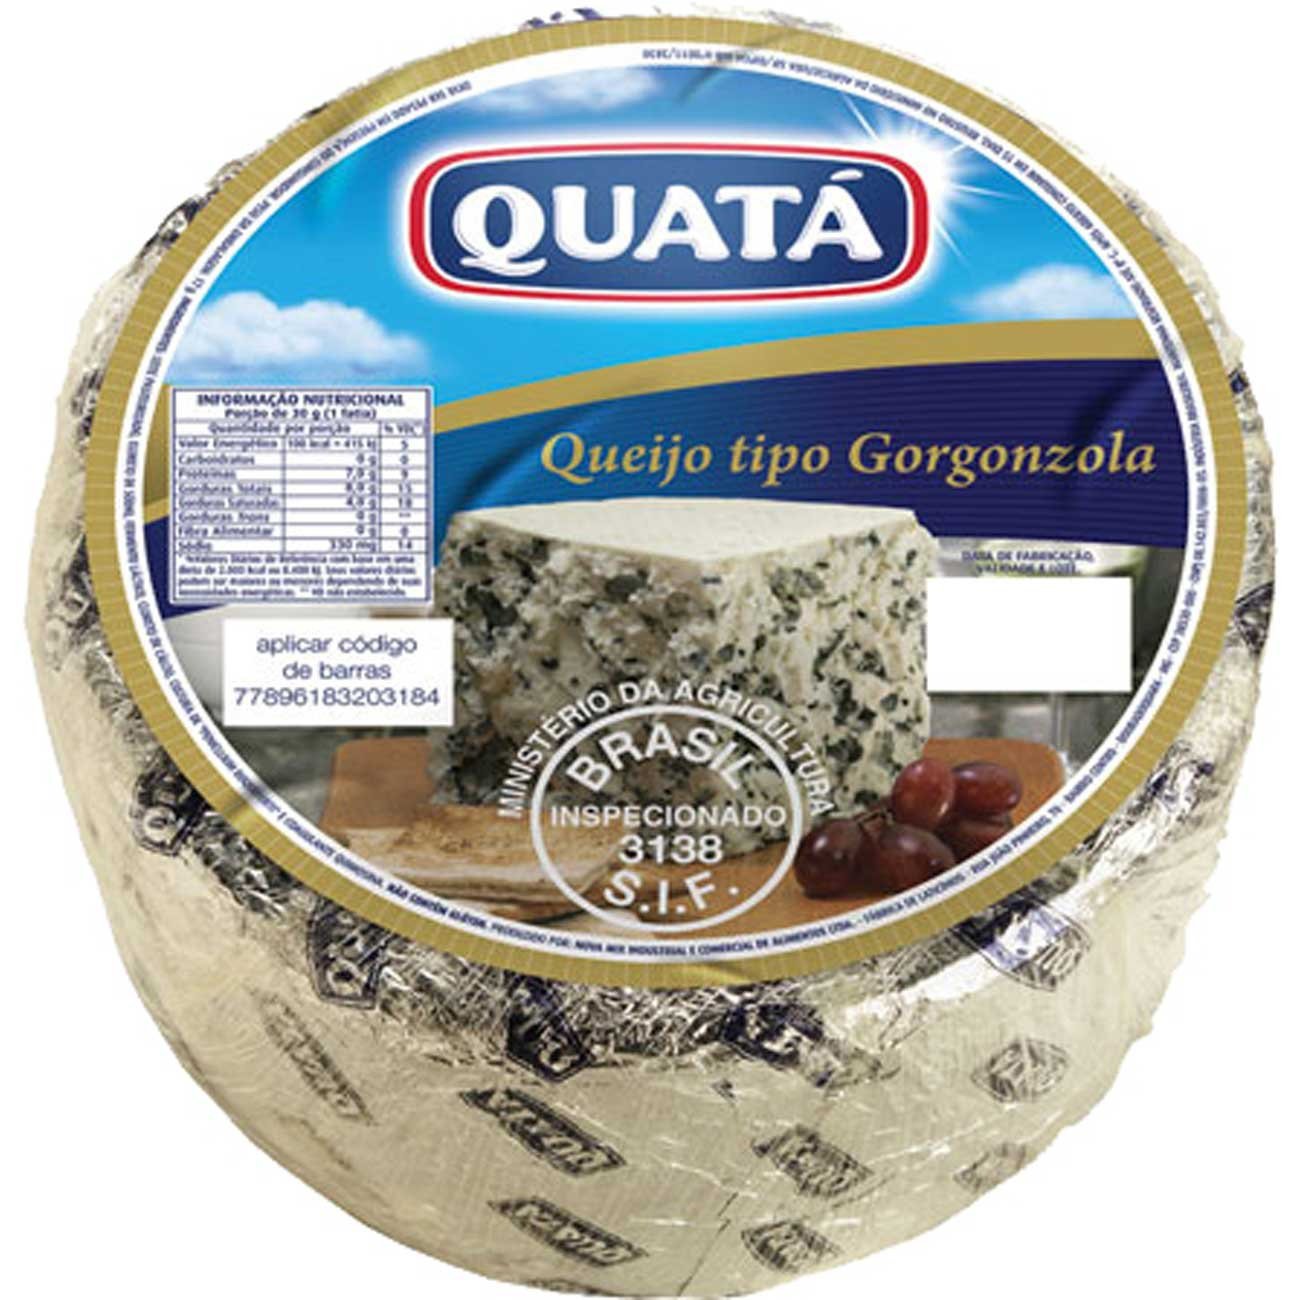 Queijo Gorgonzola Quatá Kg - Paraná Supermercados - Compre Online